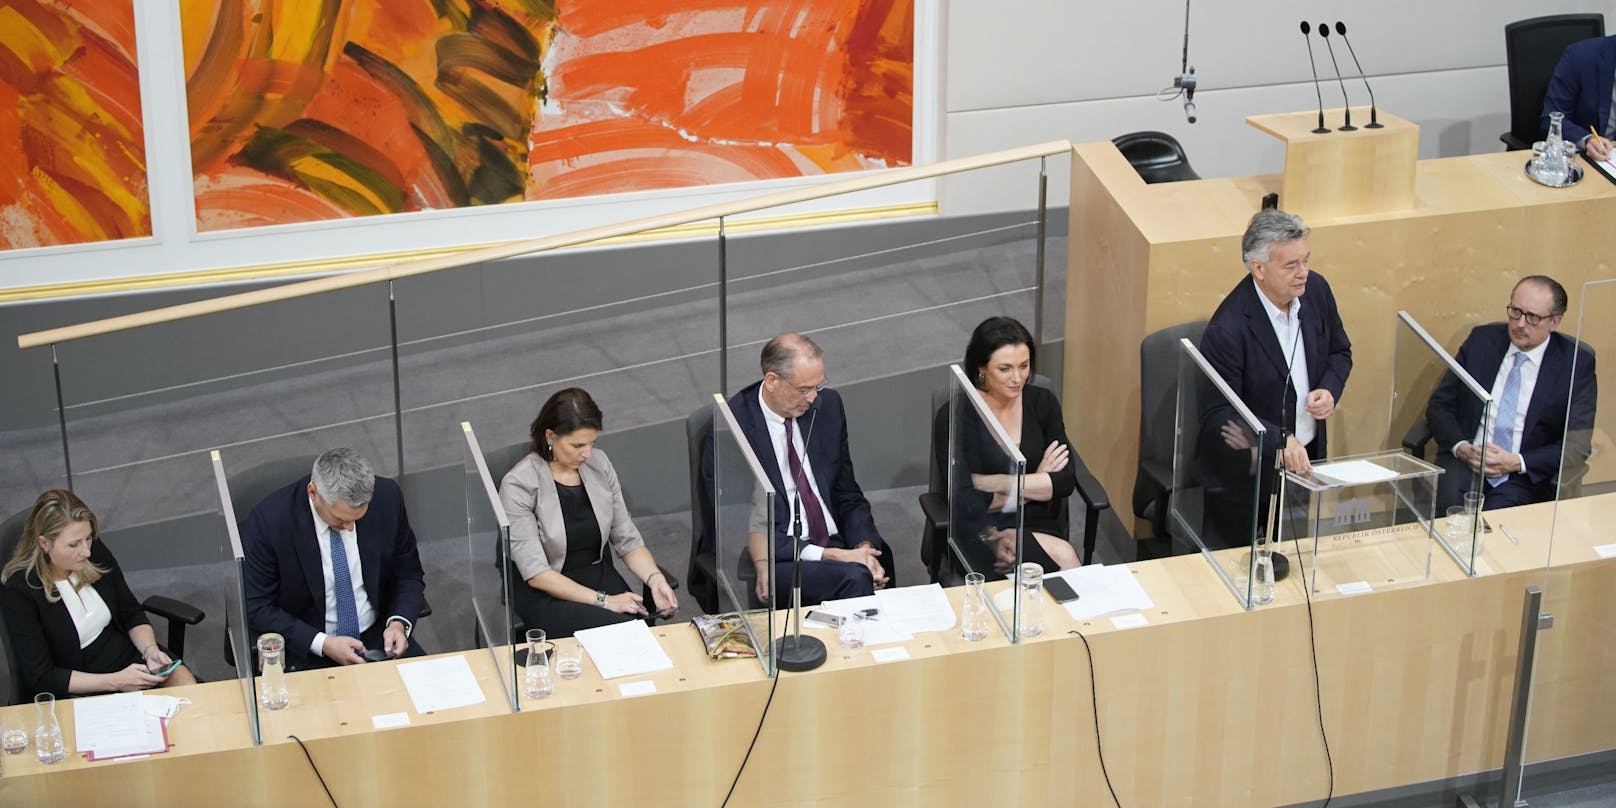 Am Dienstag fand die erste Nationalratssitzung mit Kanzler Schallenberg statt.